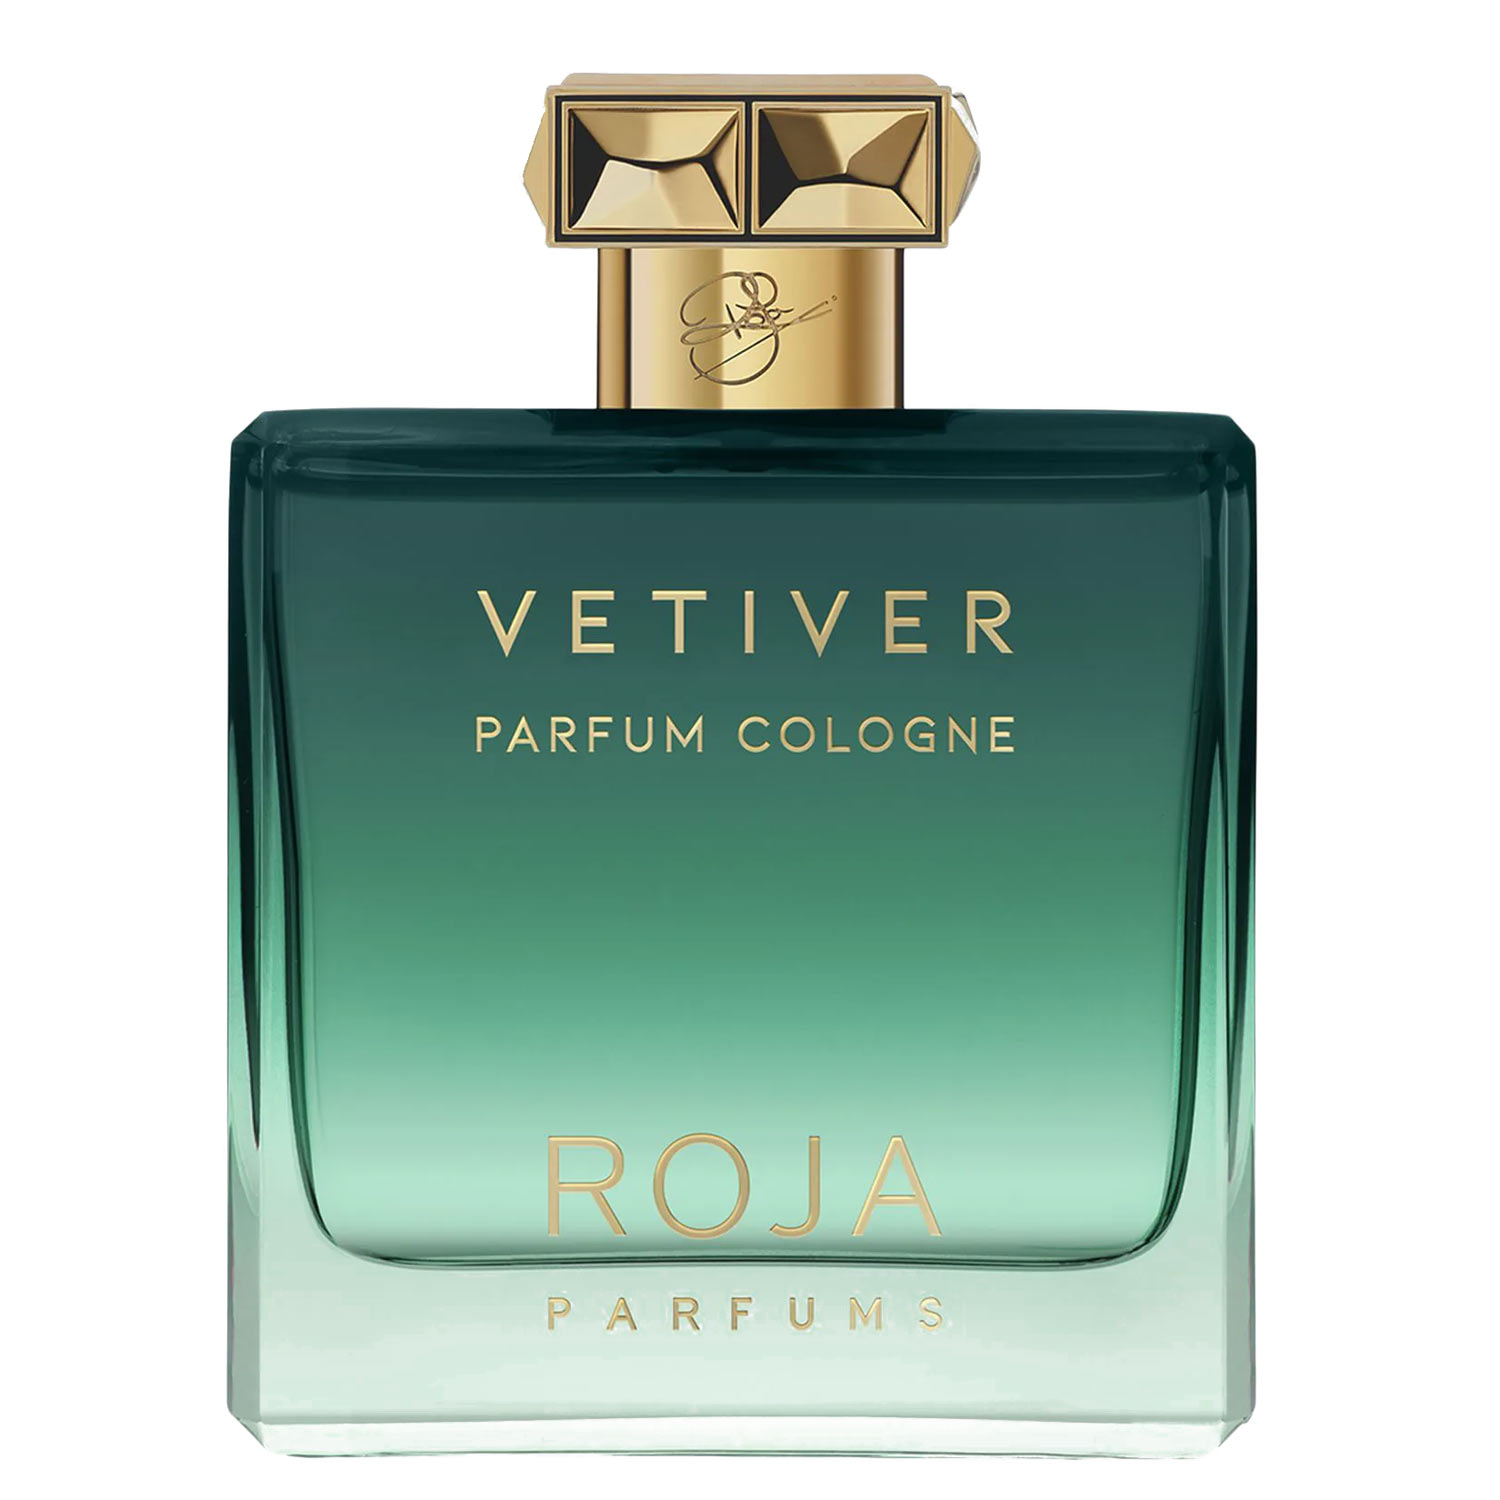 Vetiver Pour Homme Parfum Roja Parfums Image